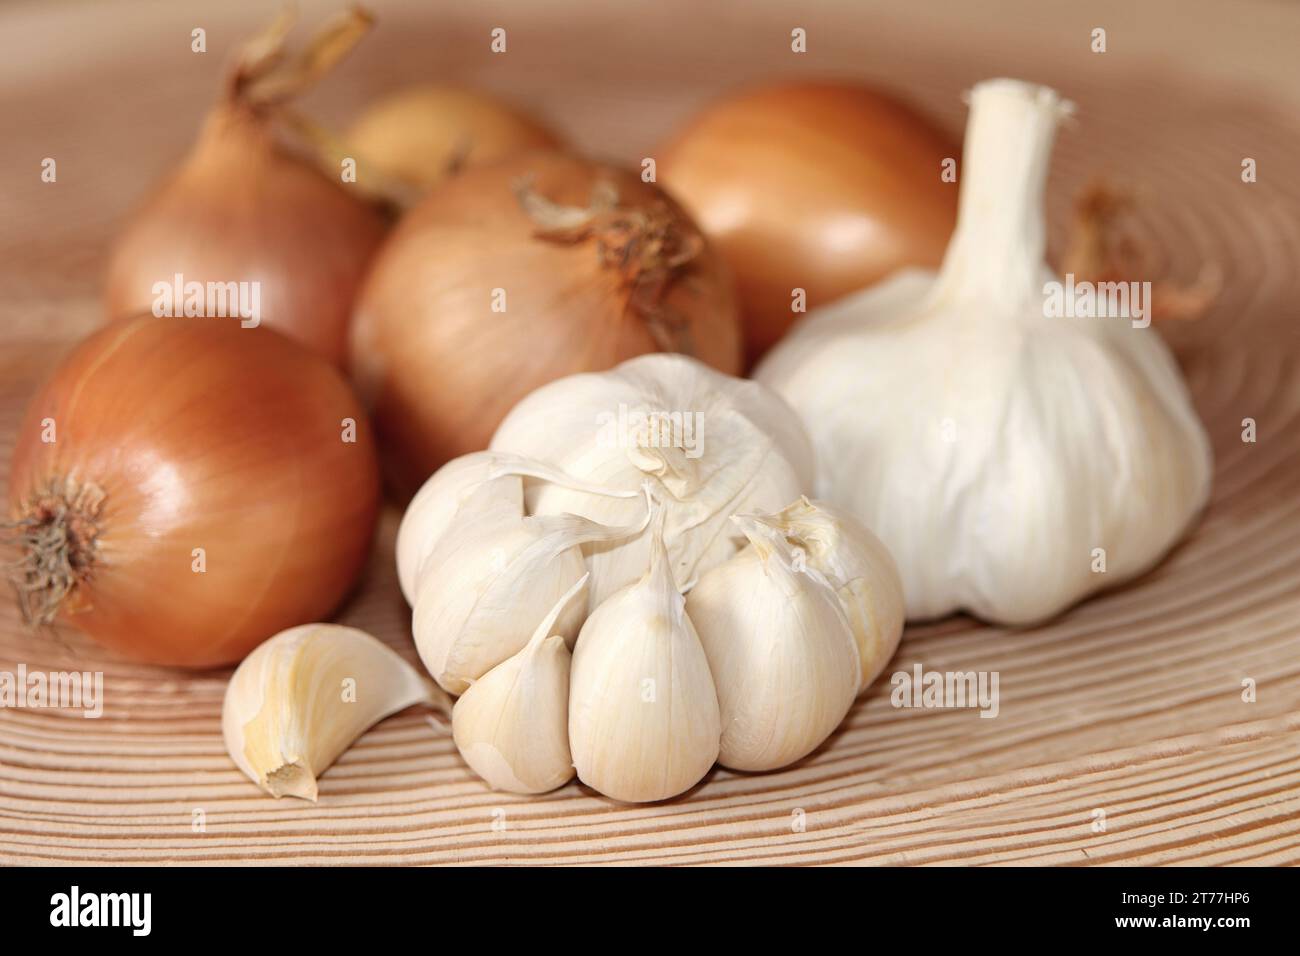 Garden onion, Bulb Onion, Common Onion (Allium cepa), onions and garlic in a basket Stock Photo